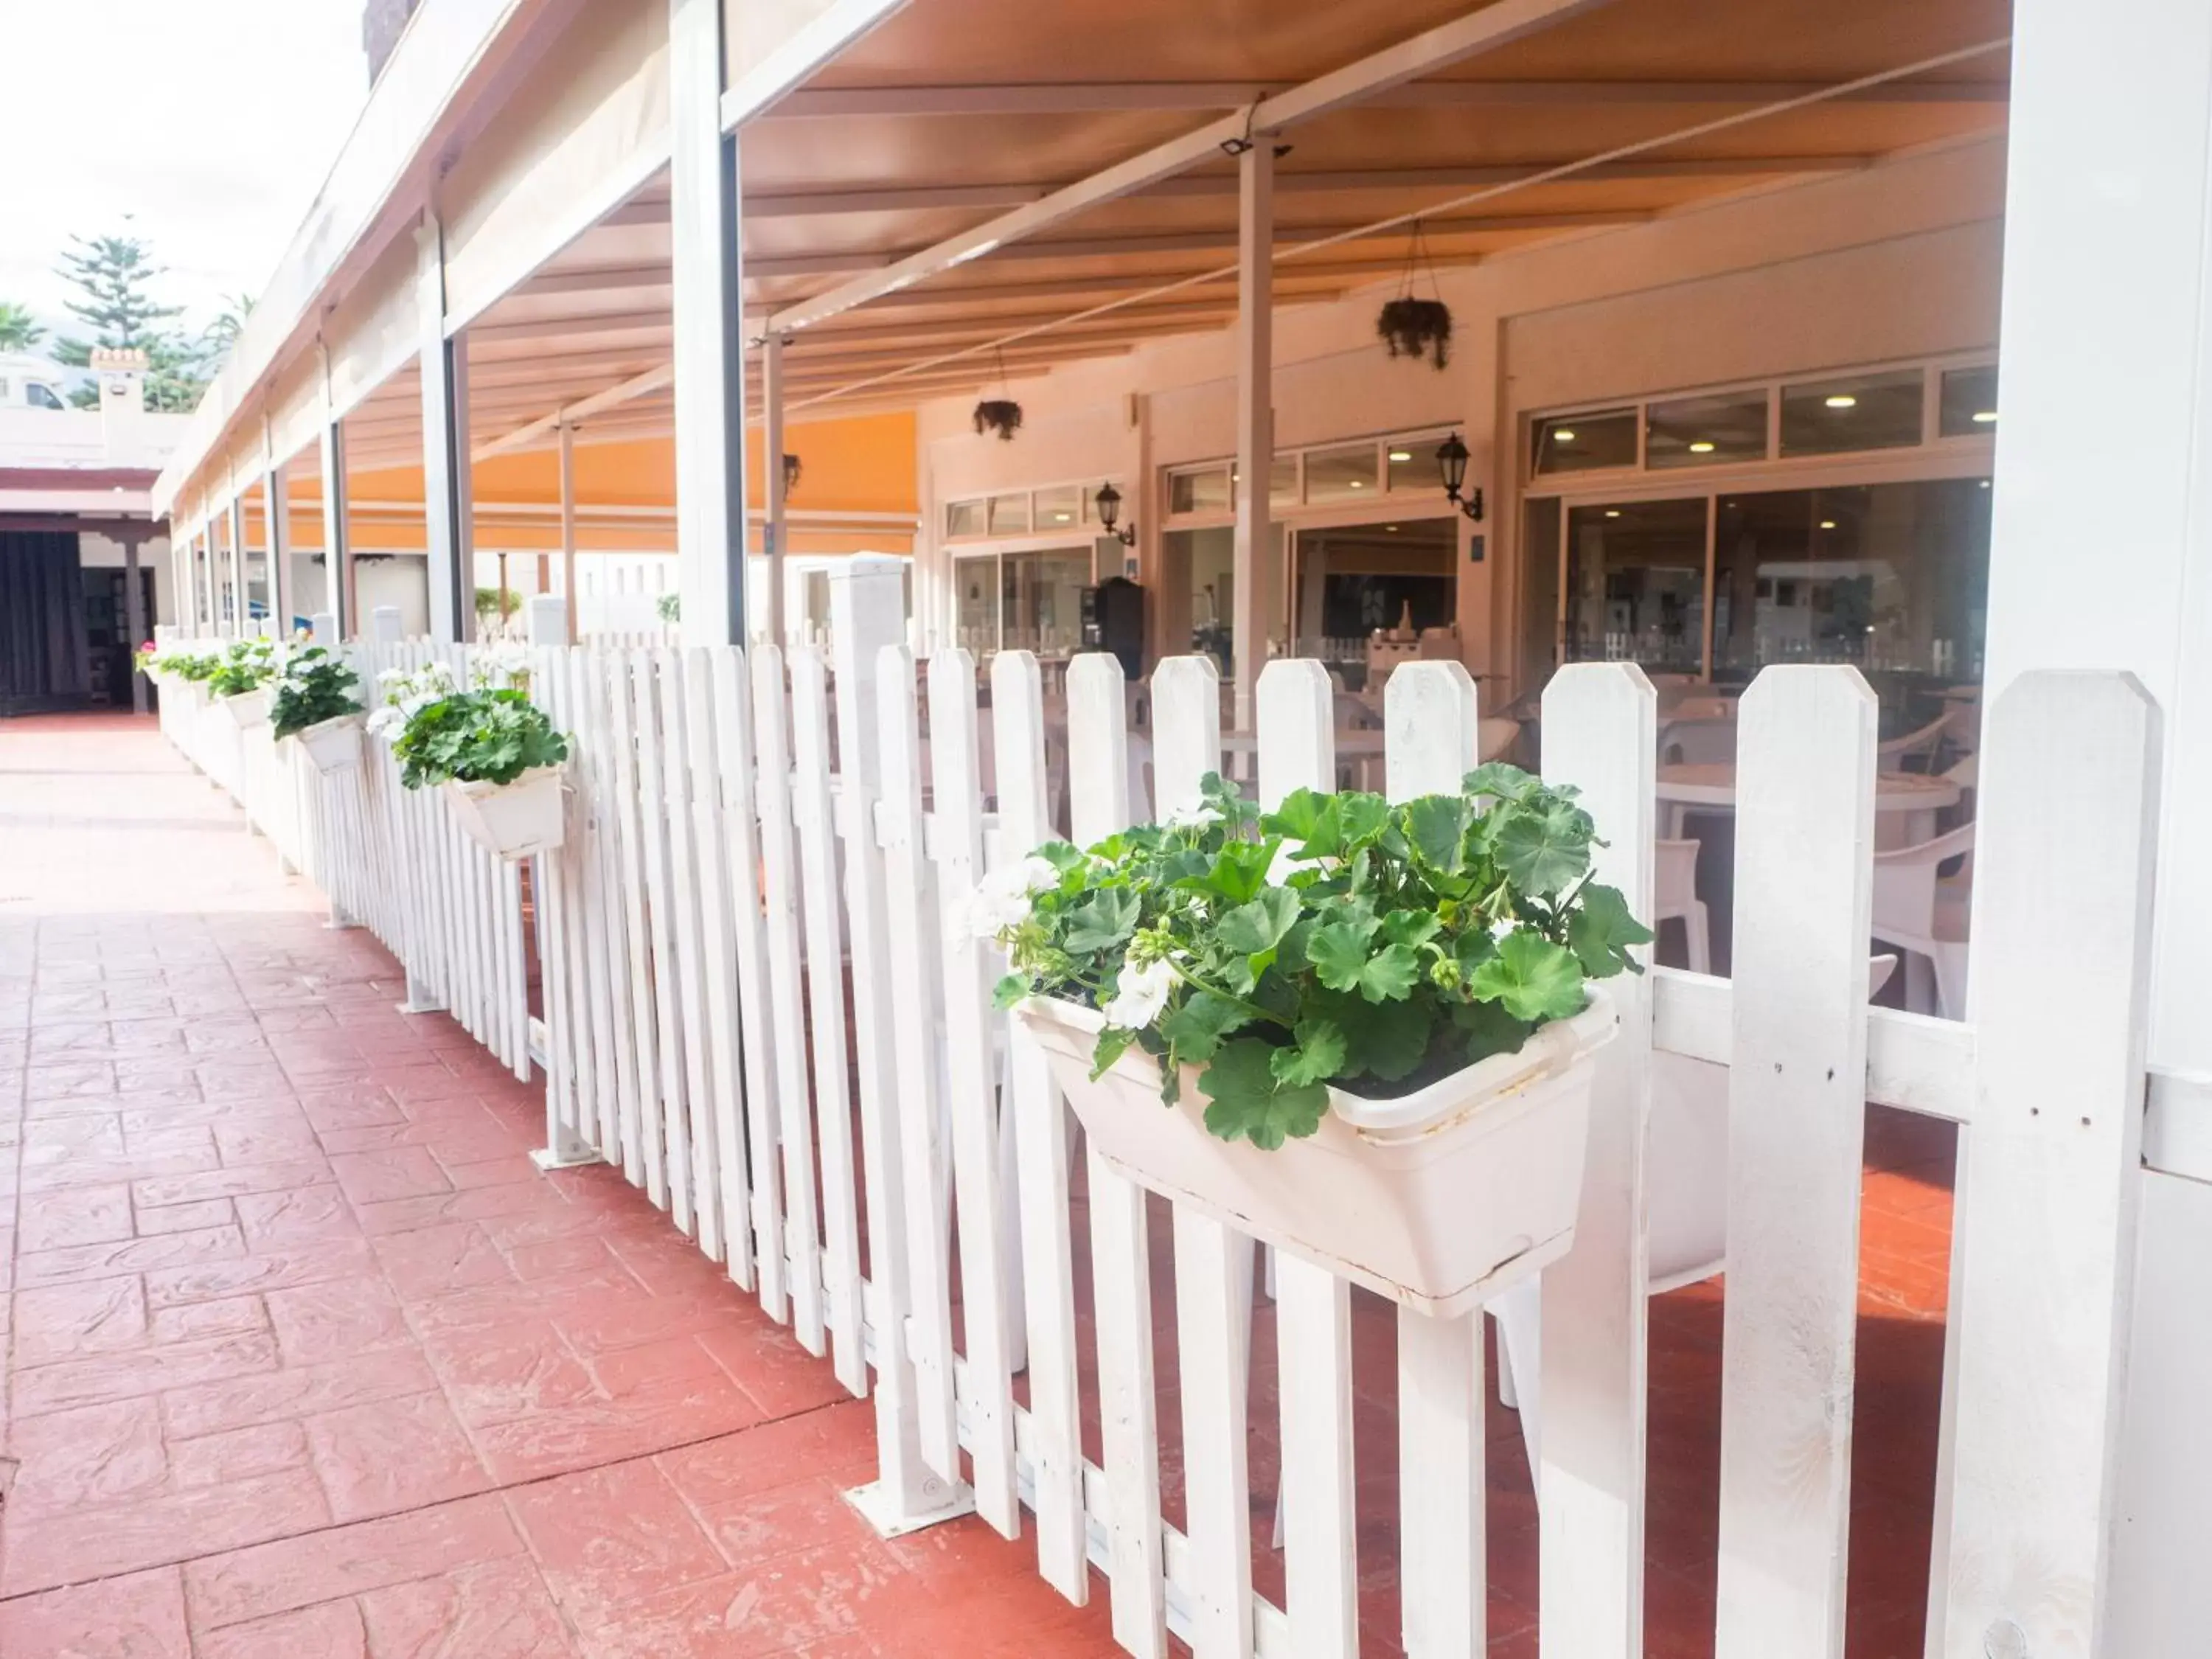 Restaurant/places to eat, Banquet Facilities in Complejo Blue Sea Puerto Resort compuesto por Hotel Canarife y Bonanza Palace